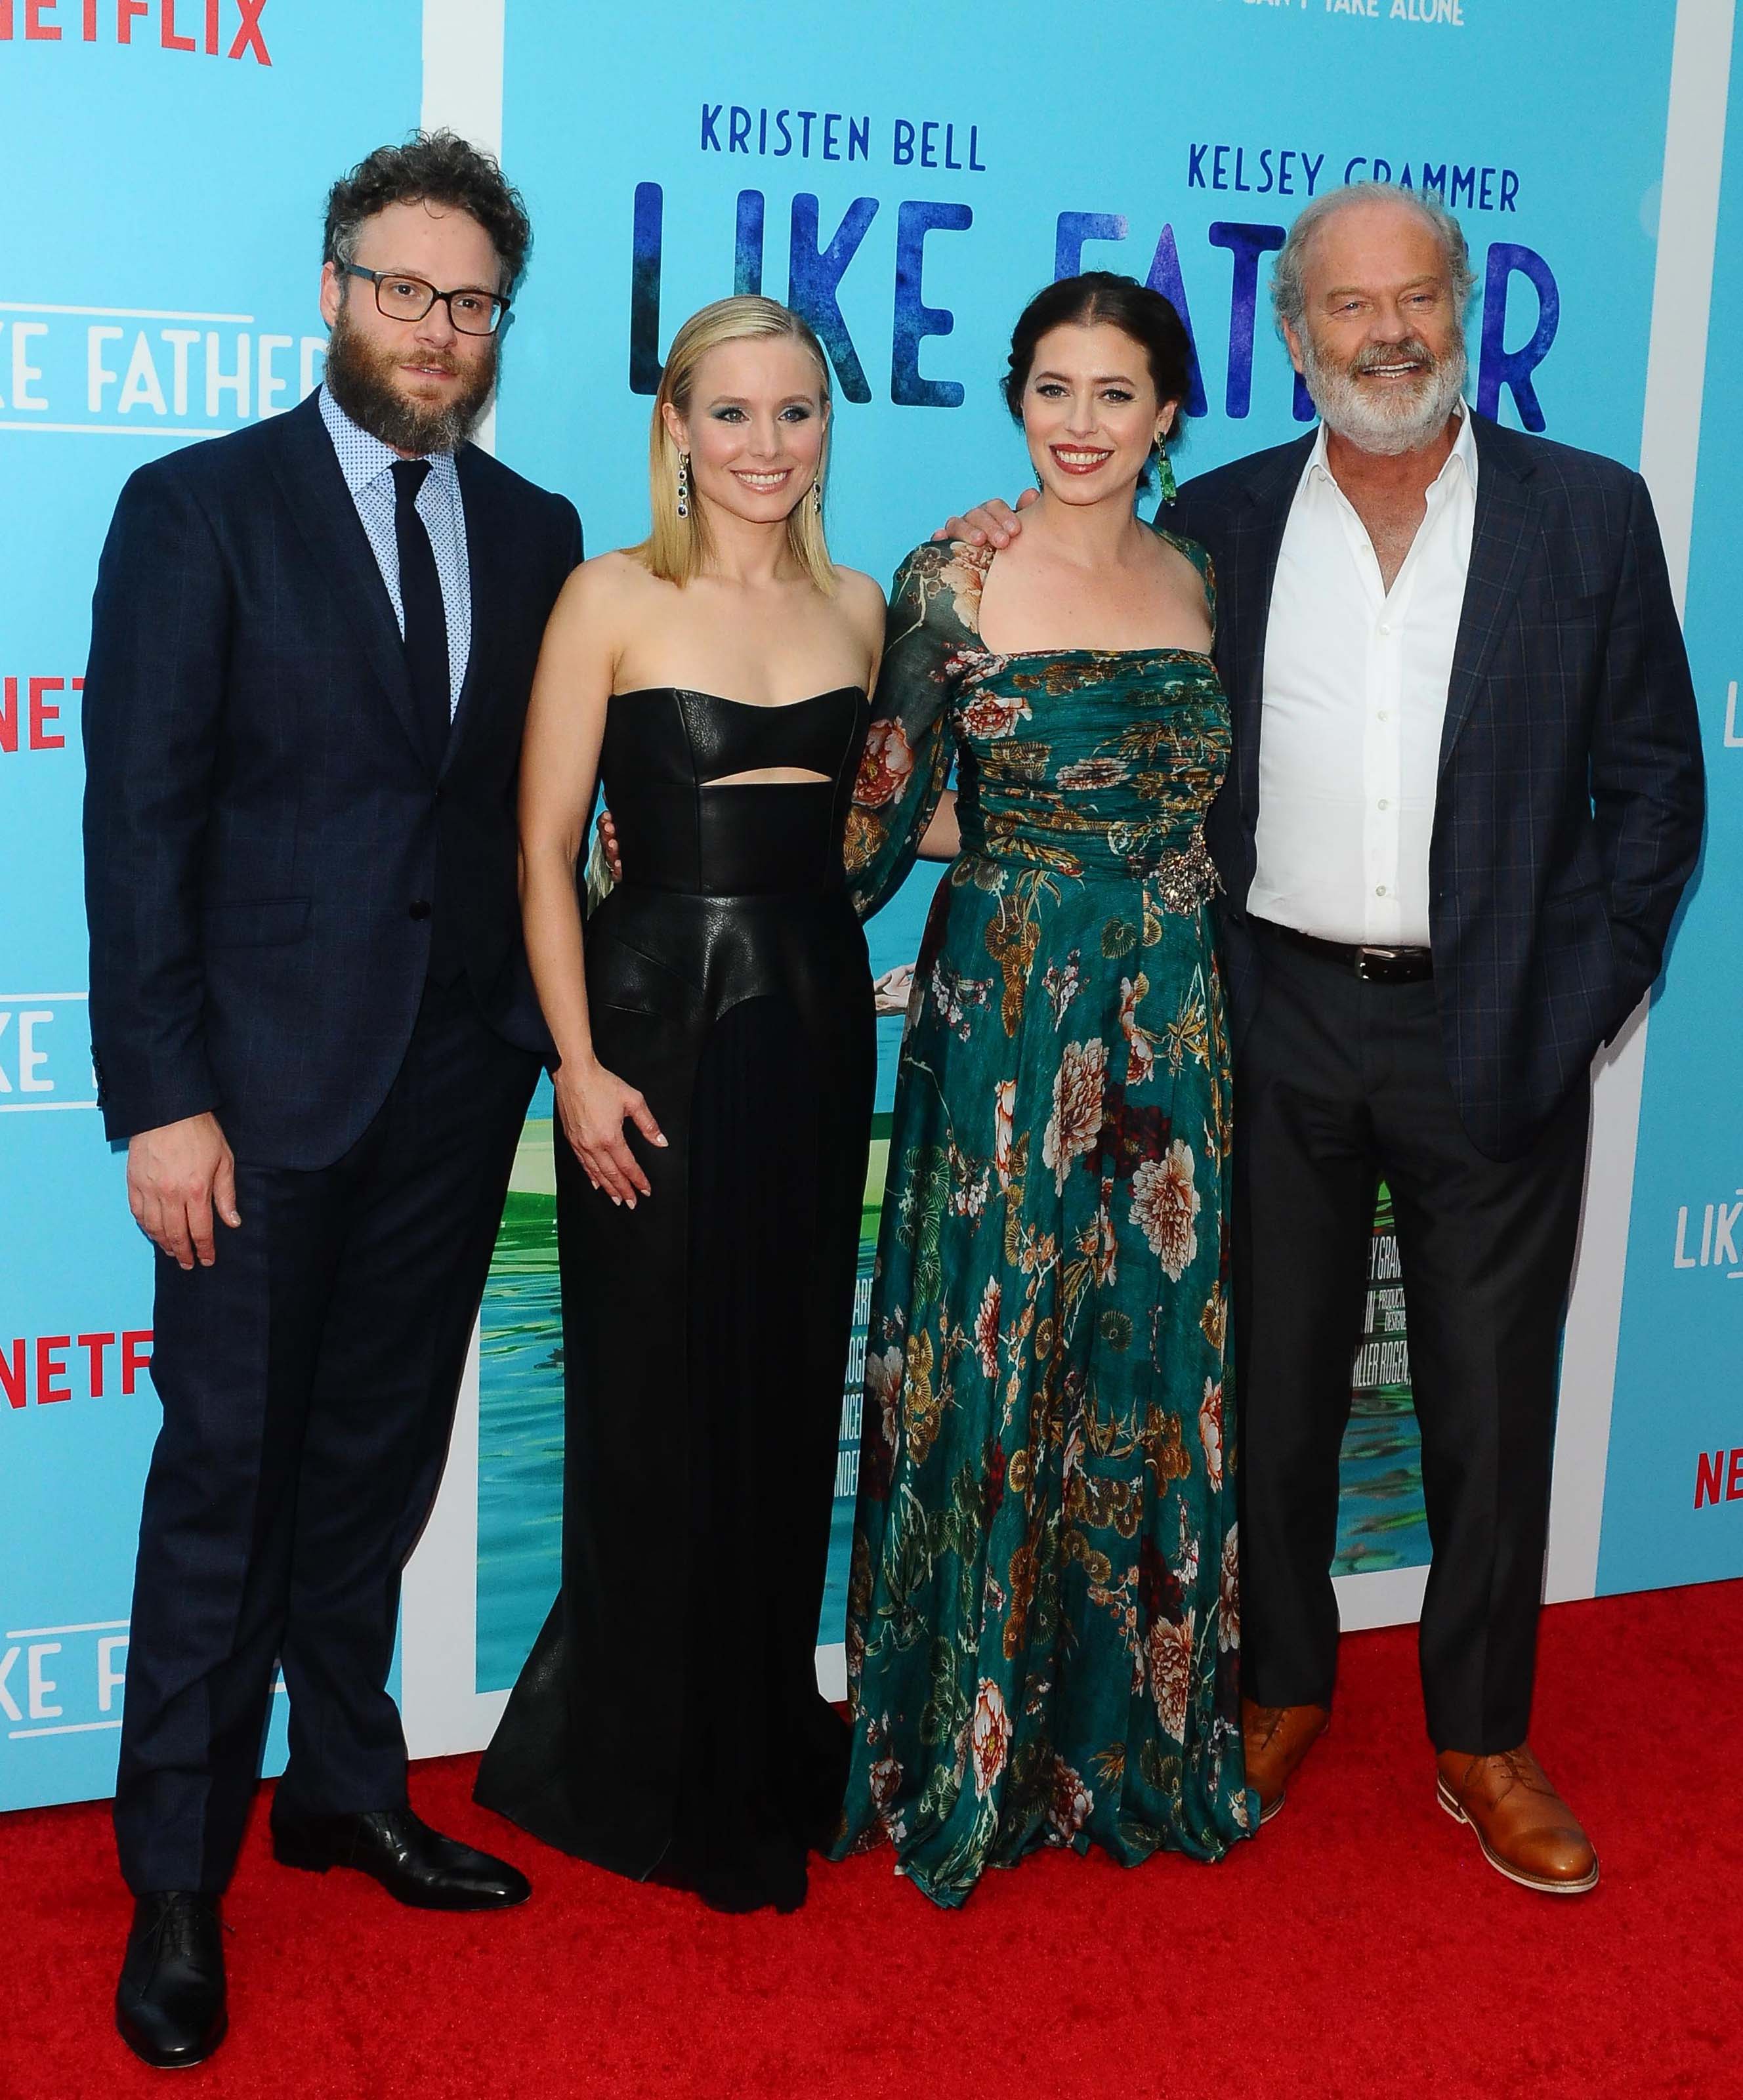 Kristen Bell attends Like Father film premiere